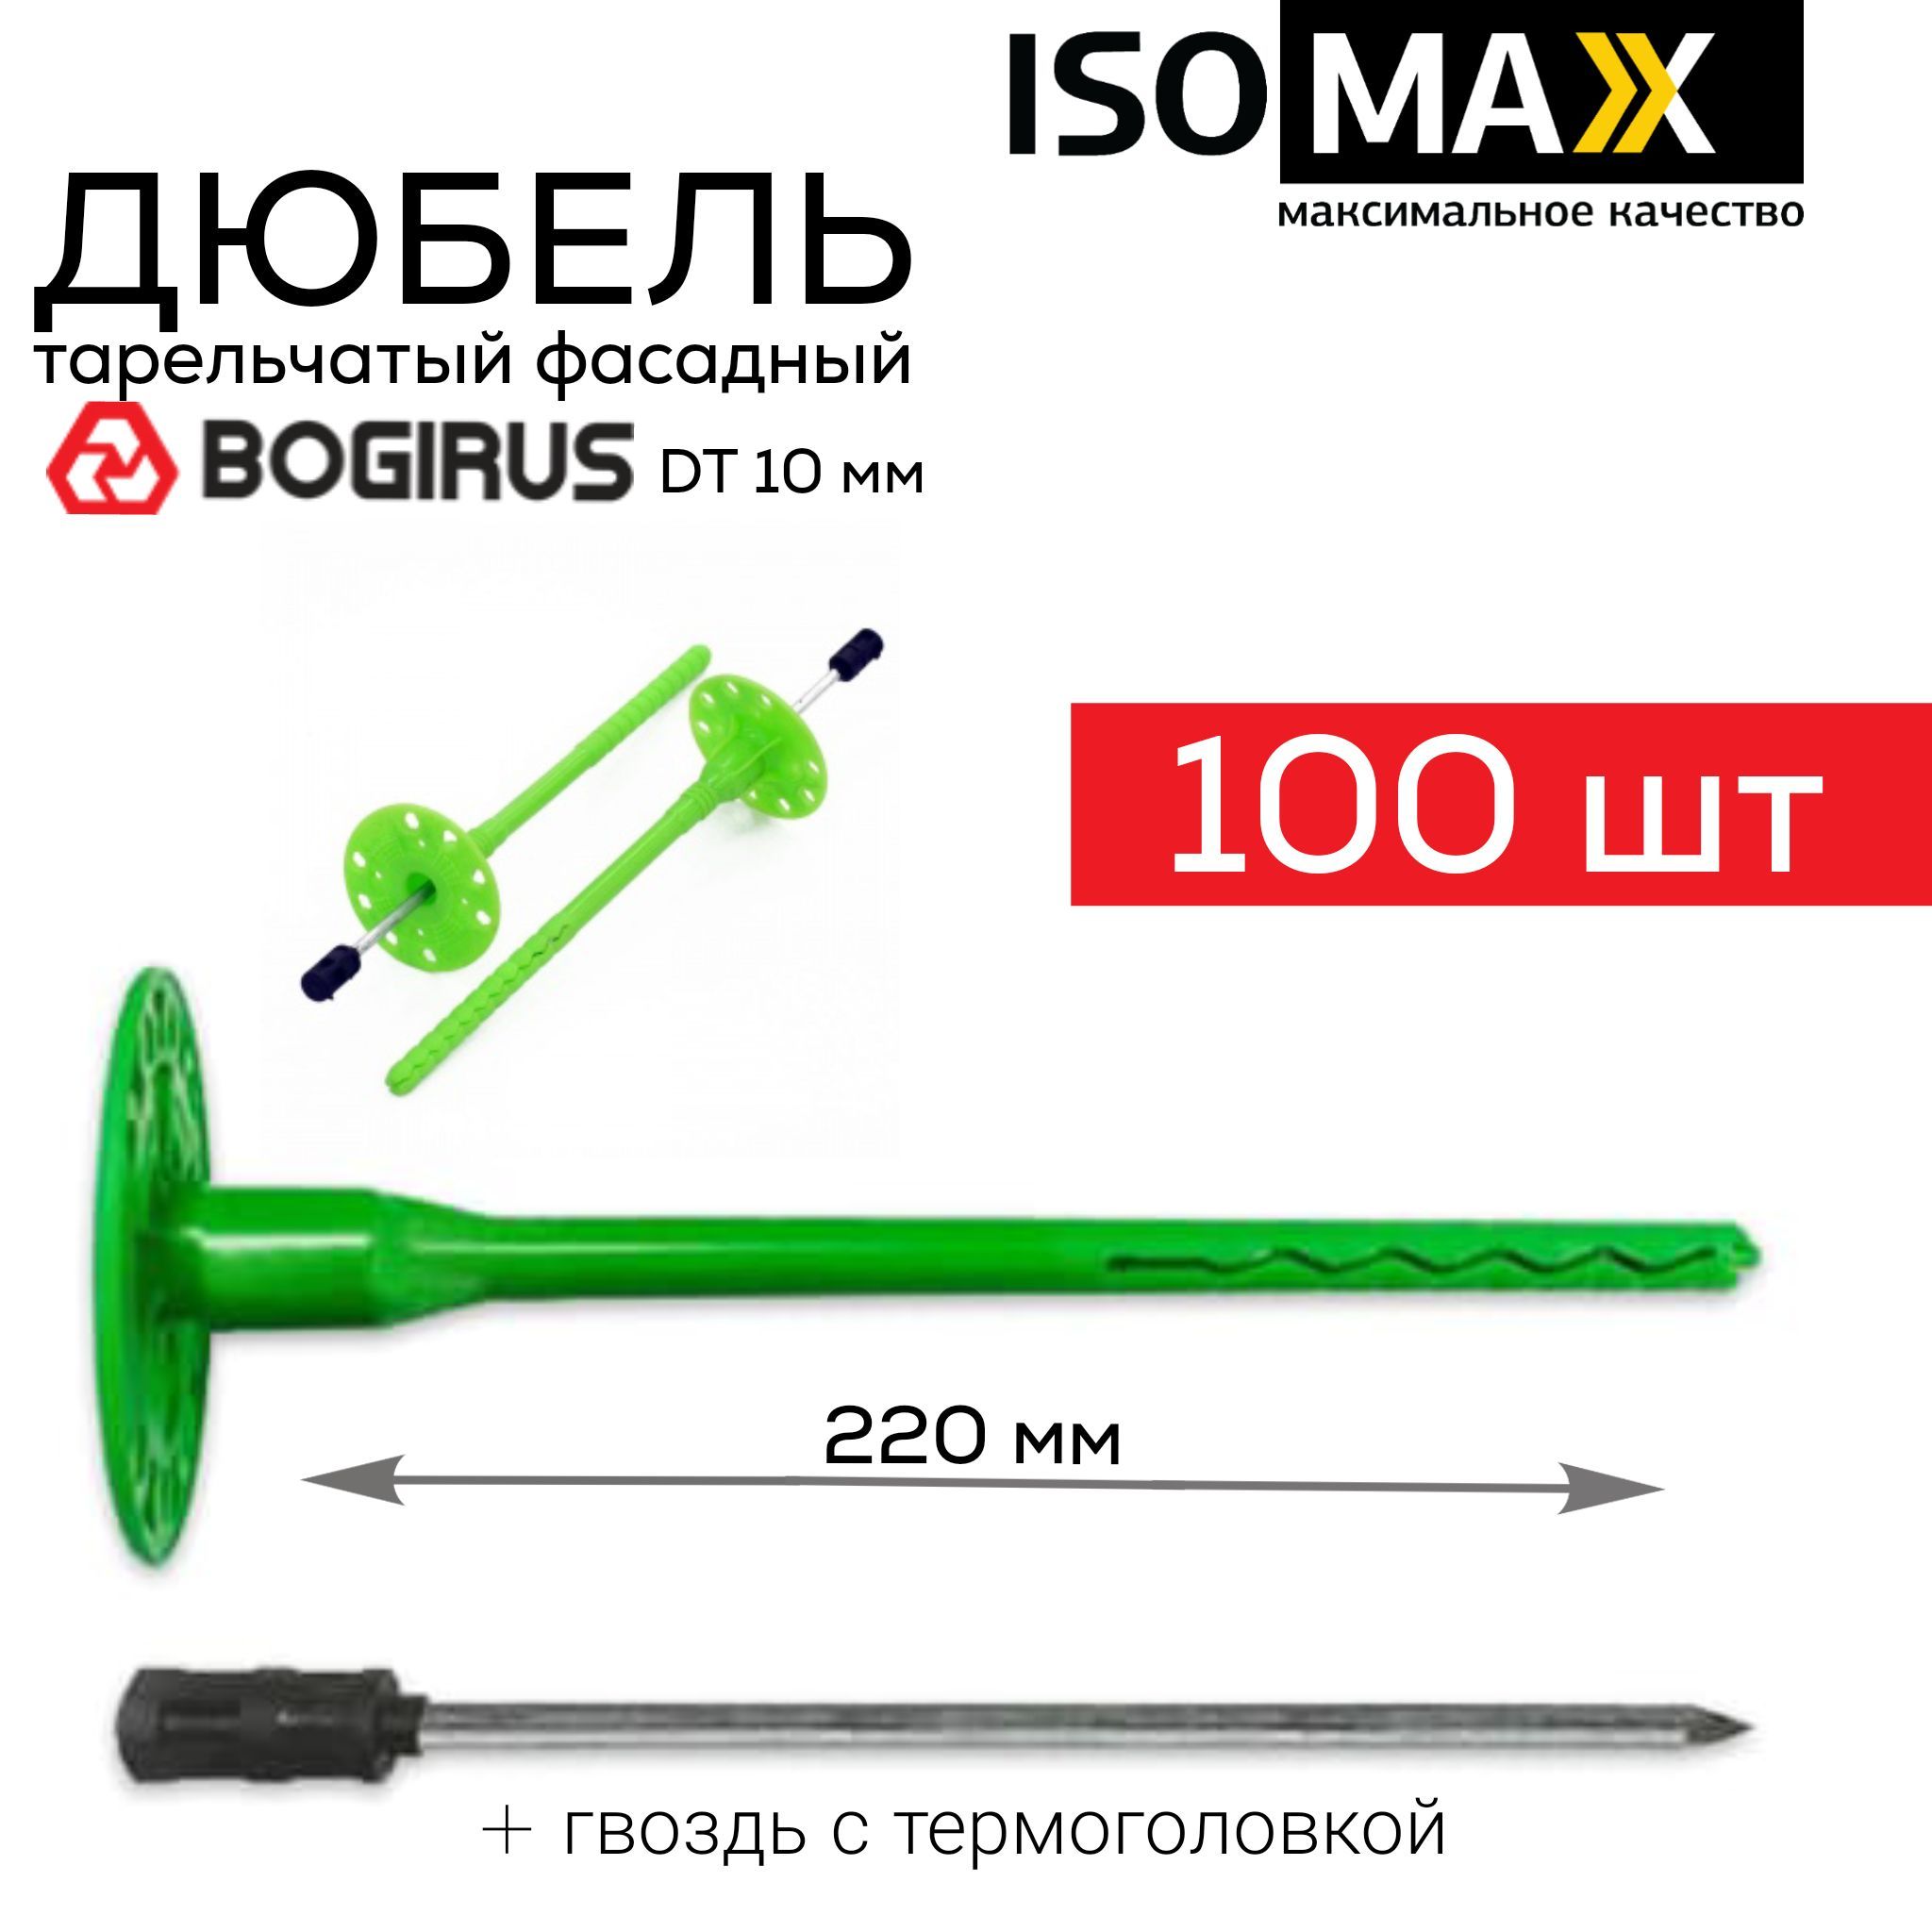 Дюбель гриб Isomax Bogirus DT10 220 мм 100 шт/уп, для крепления утеплителя